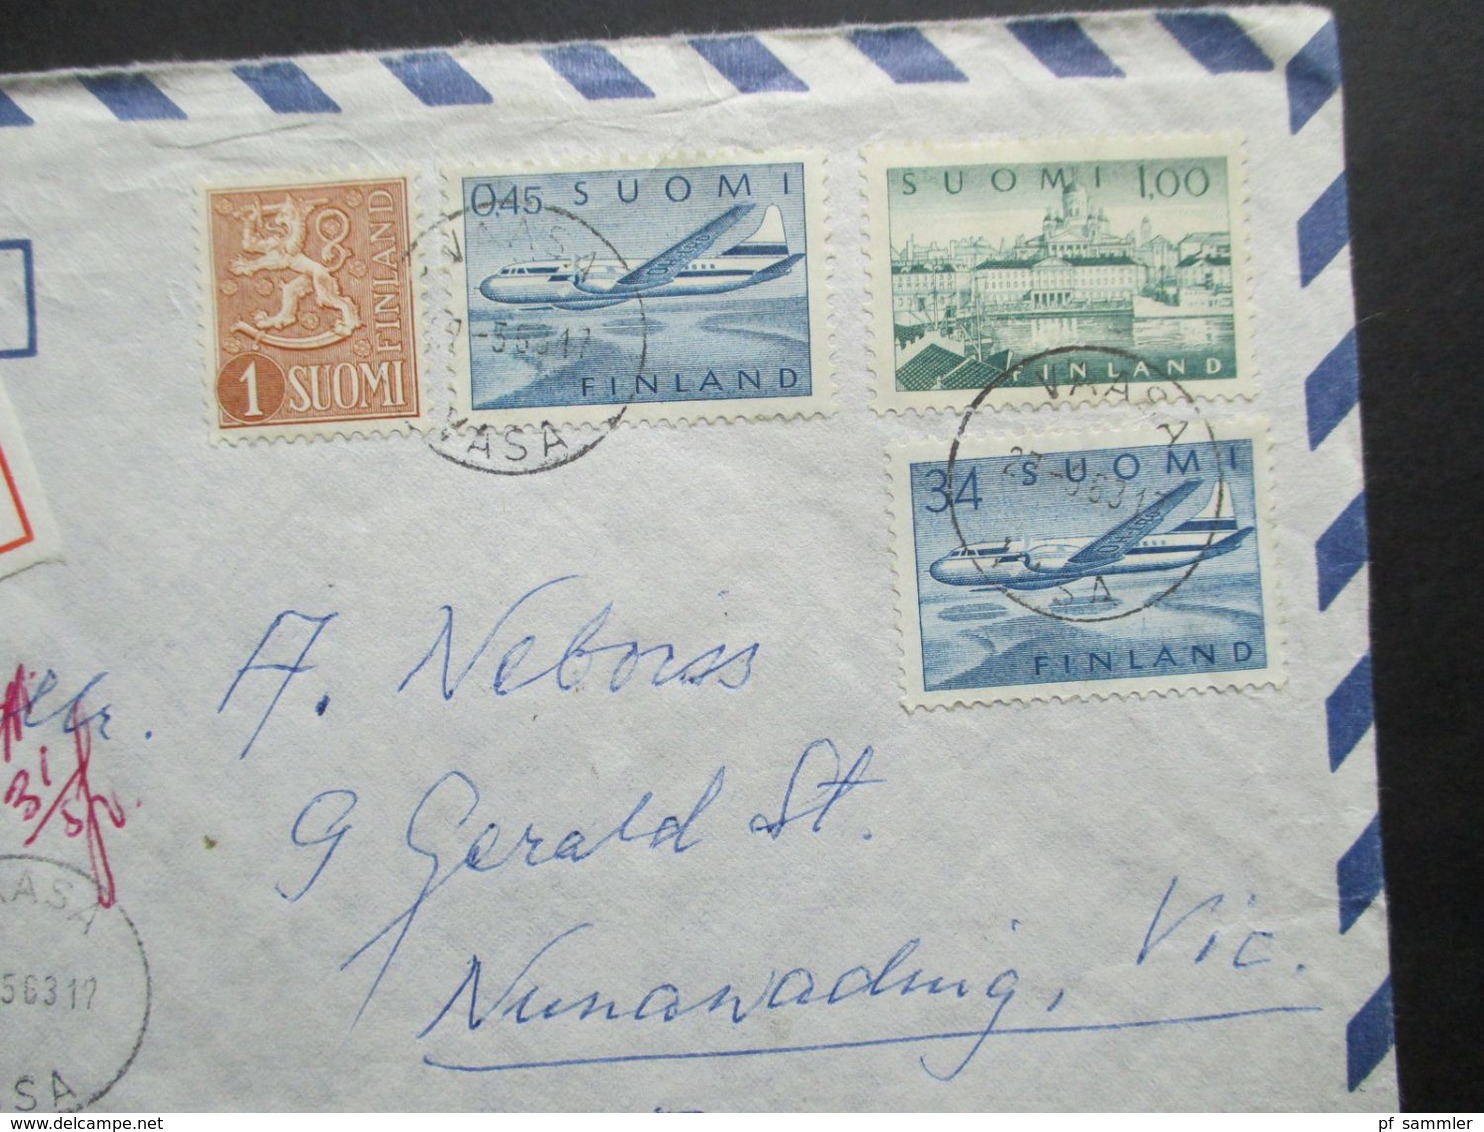 Finnland 1963 Luftpost Par Avion Einschreiben Vaasa Nach Australien Mit 2 Ank. Stempel - Covers & Documents